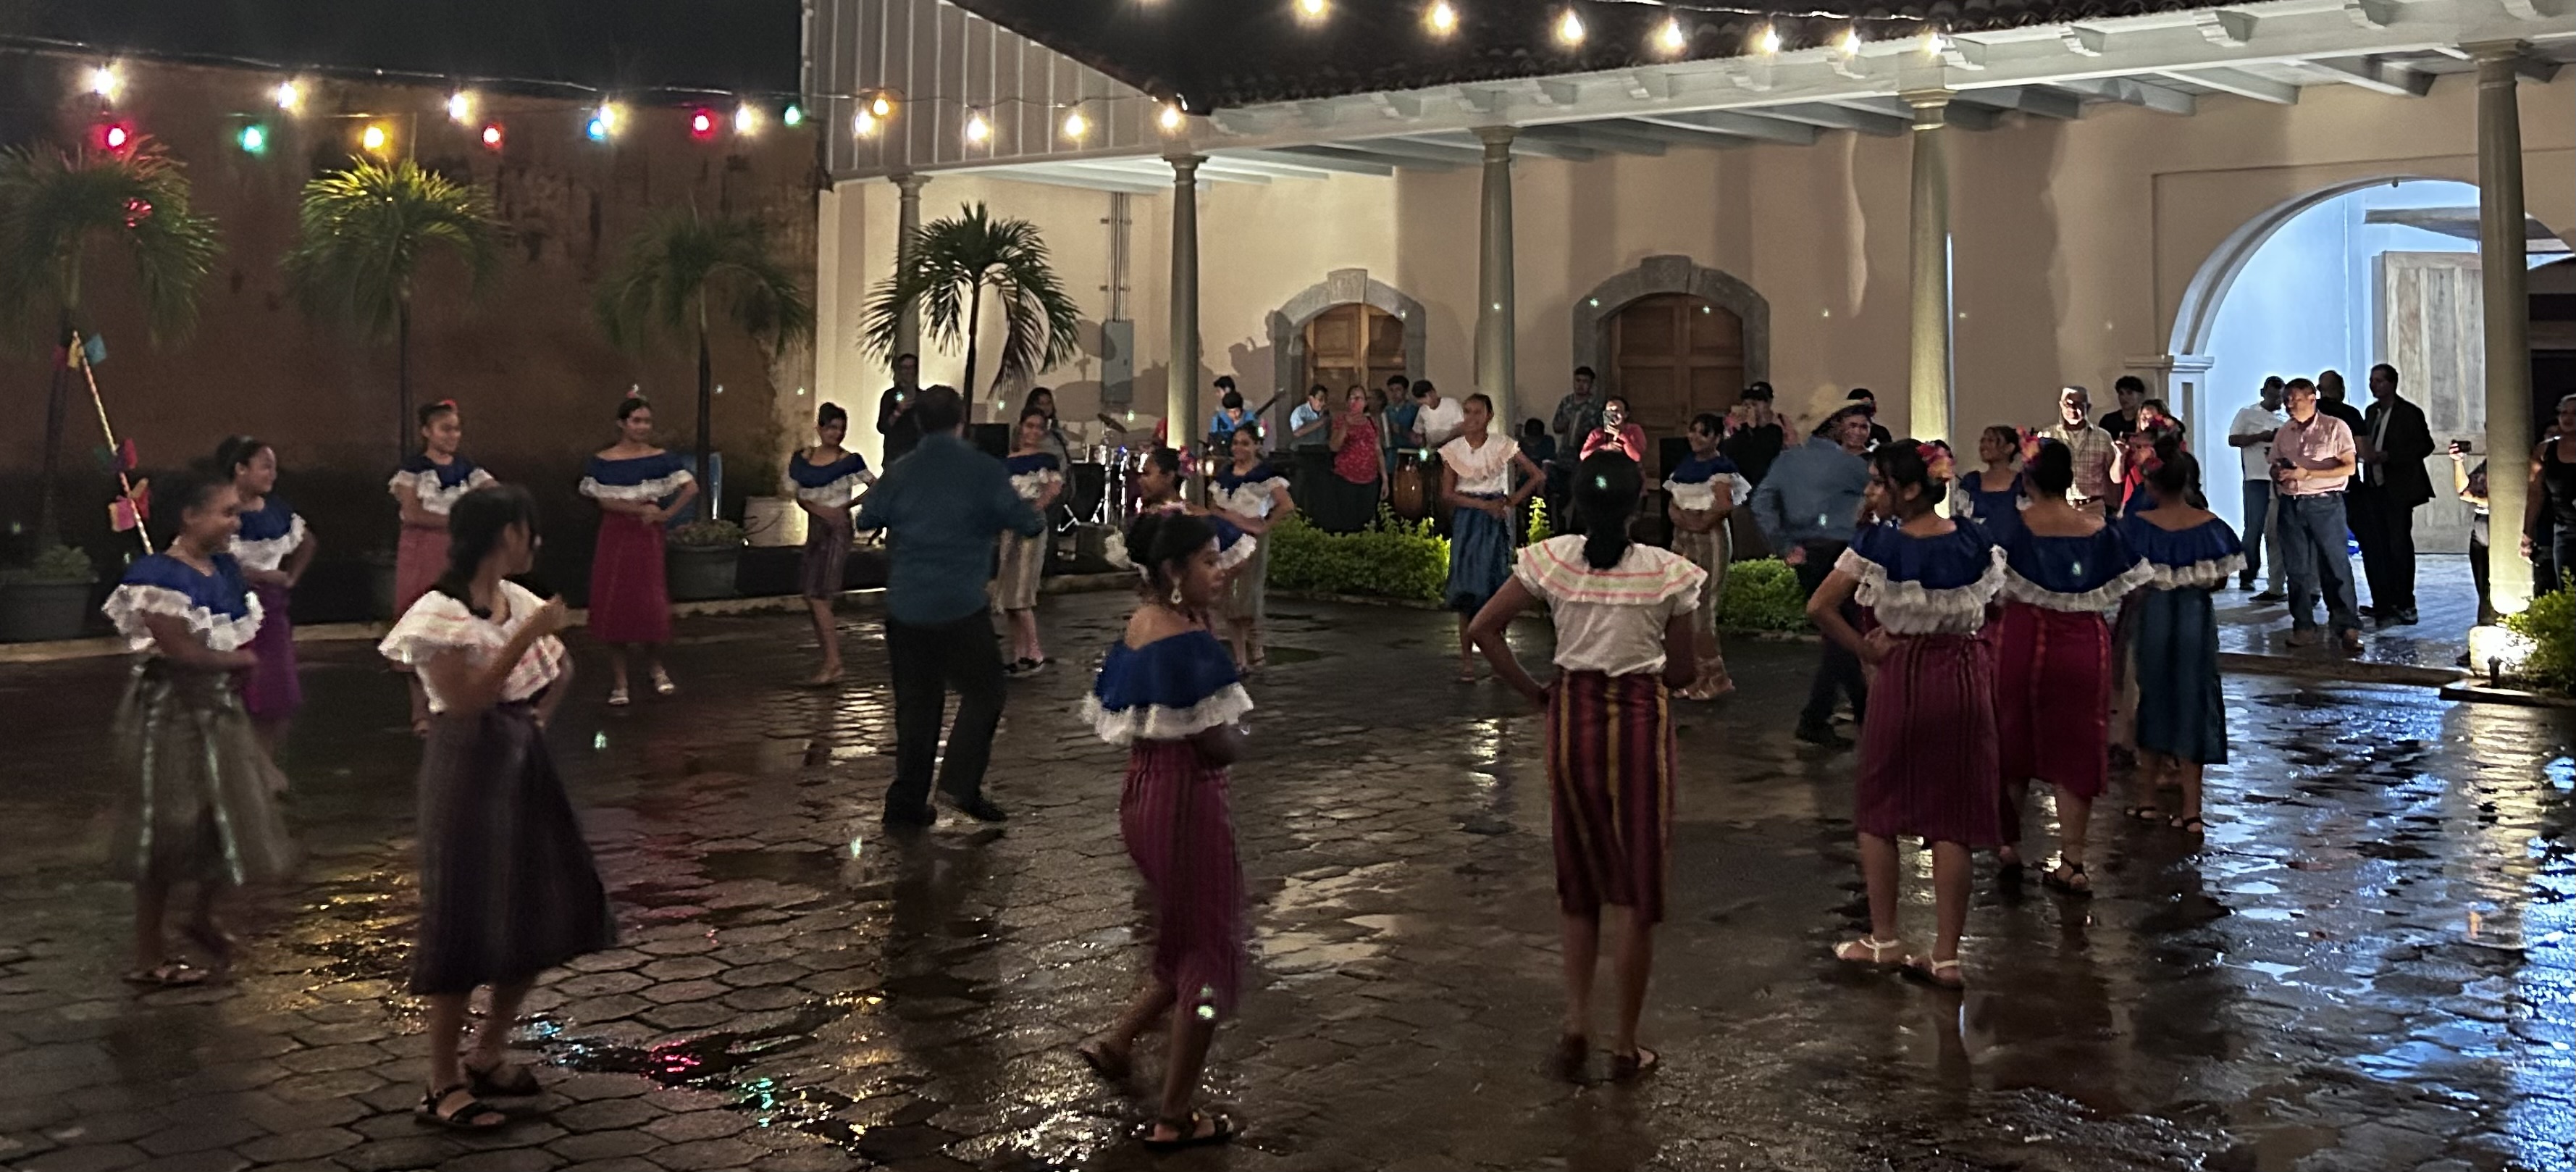 VIII Encuentro Iberoamericano de Turismo Rural El Salvador